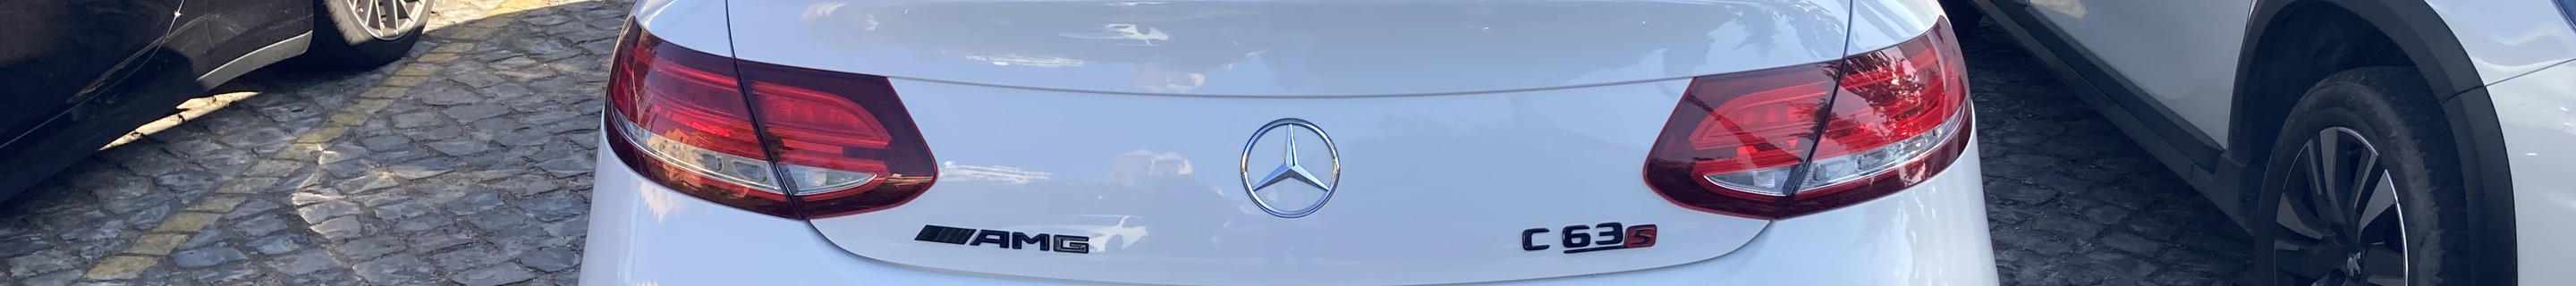 Mercedes-AMG C 63 S Coupé C205